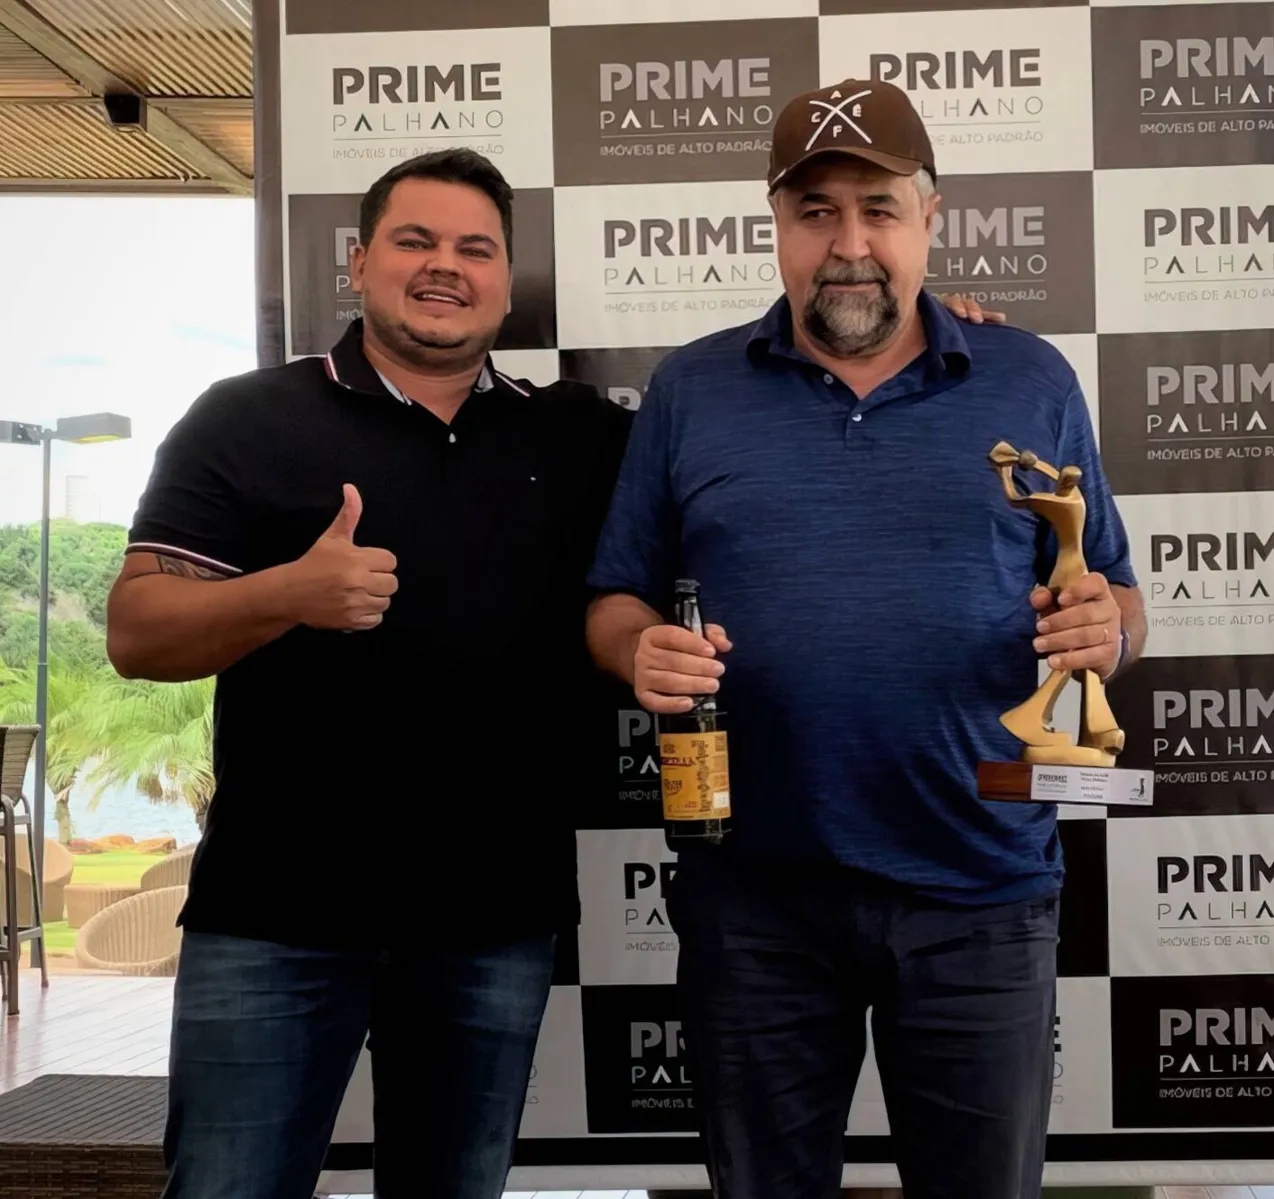 Paulo Tressoldi recebeu o prêmio de Junior Neves, um dos sócios da Prime Palhano